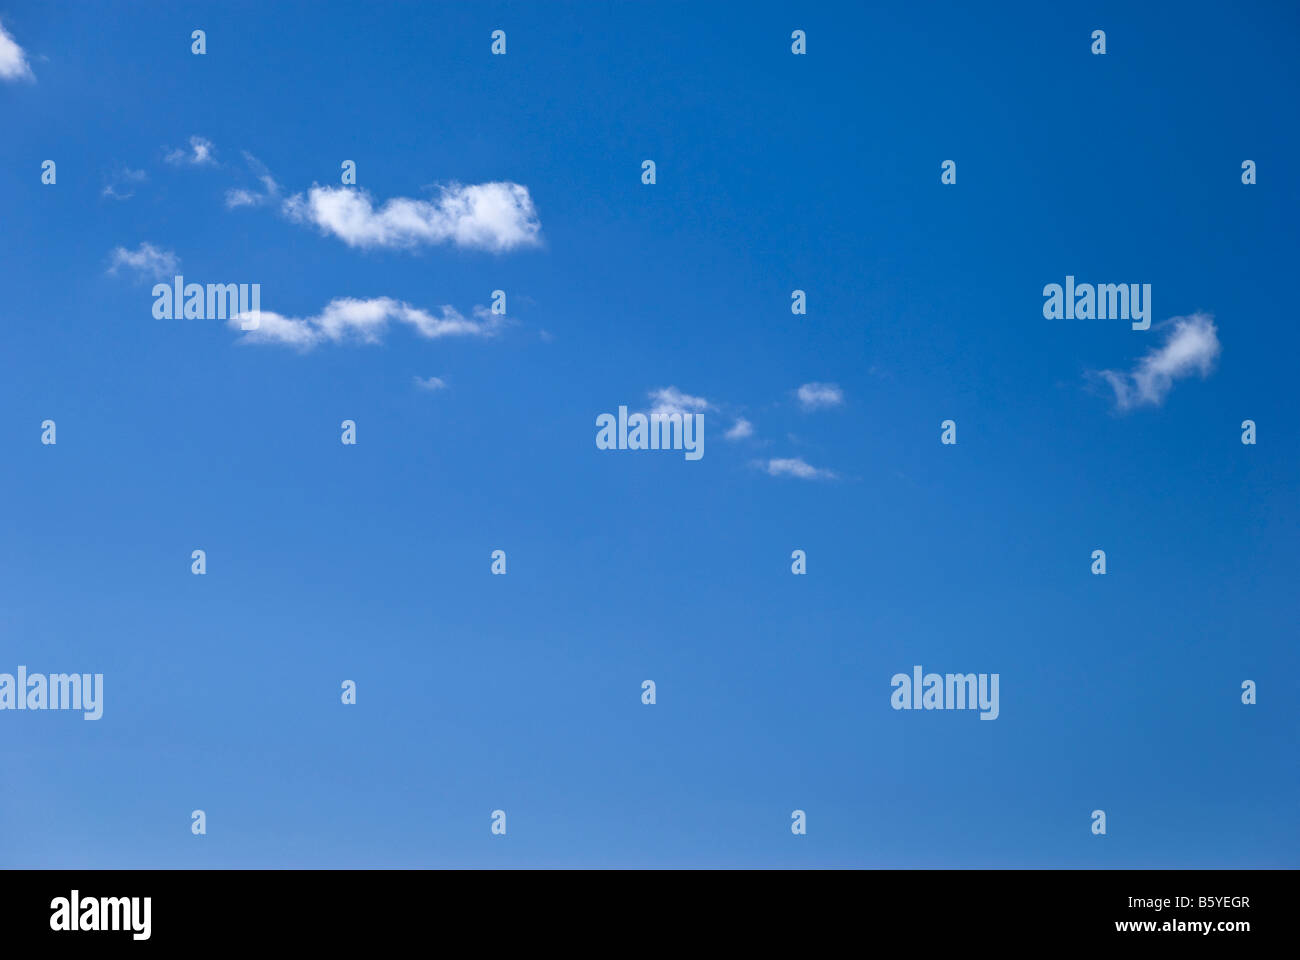 Una línea de suave o algodón como nubes flotar contra un cielo azul perfecto Foto de stock